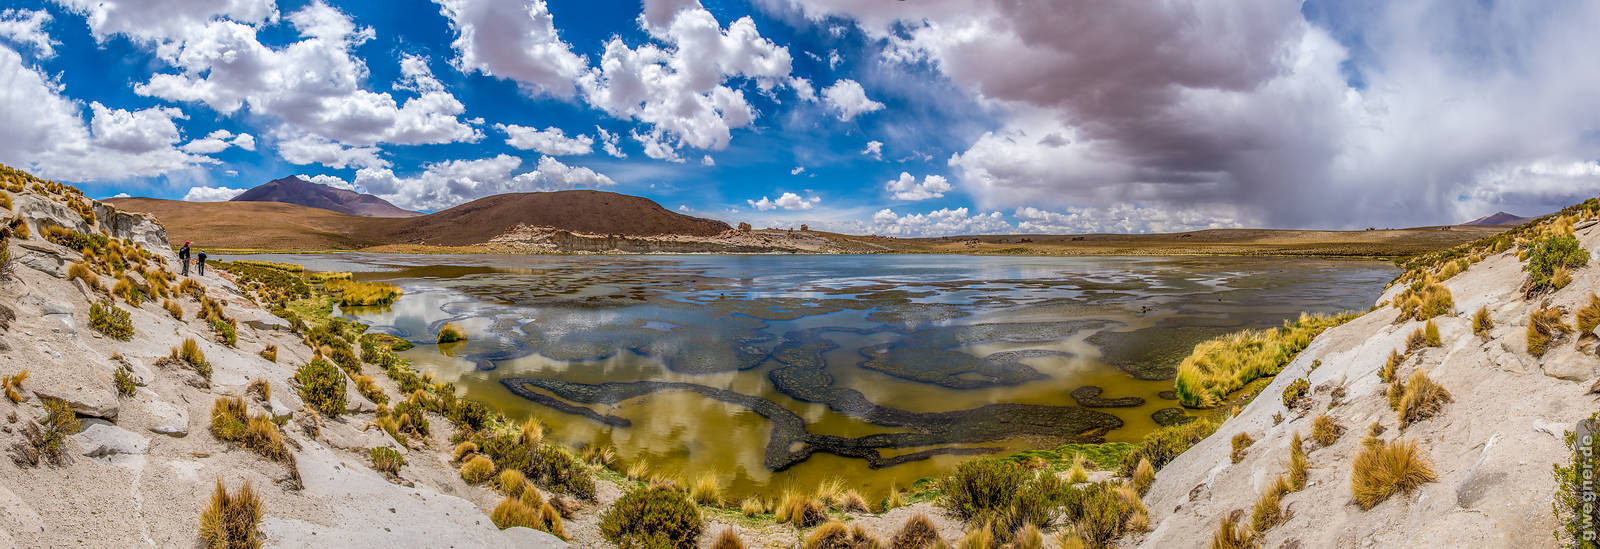 20150409 Altiplano-Expedition erneut ein prägendes Erlebnis